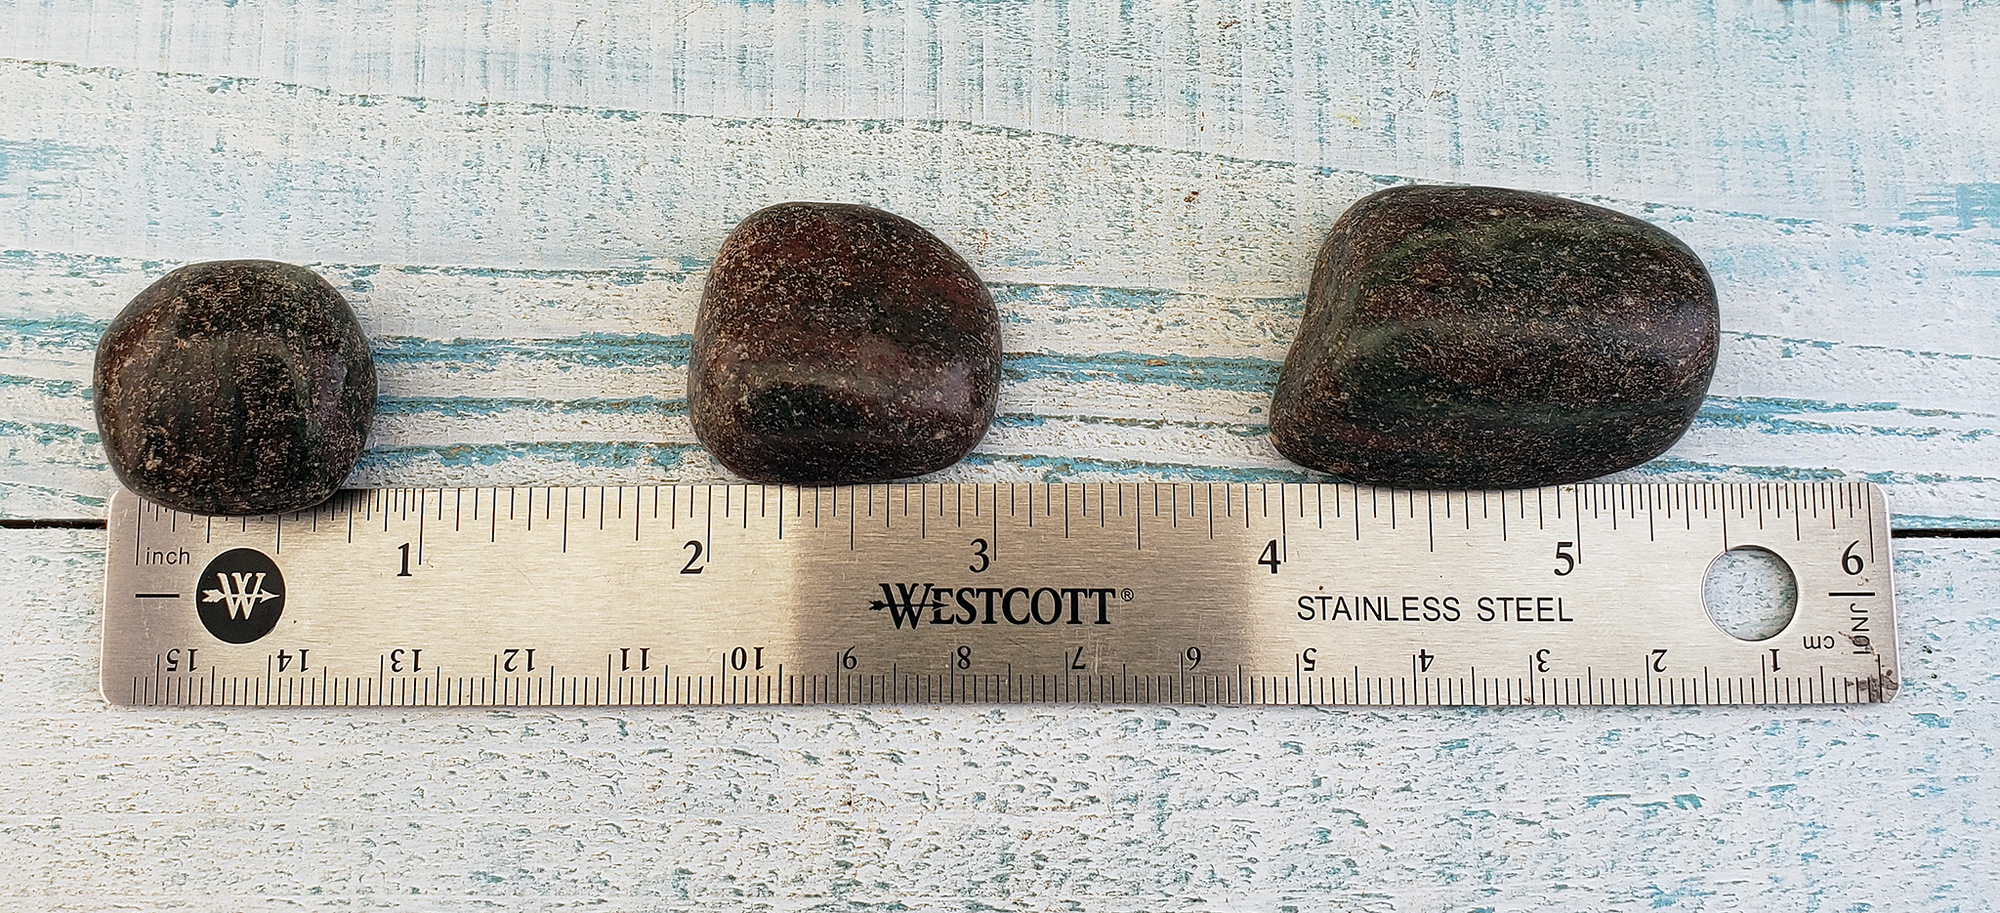 Pyrope Garnet Tumbled Gemstone - One Stone or Bulk Wholesale Lots - Size Comparison